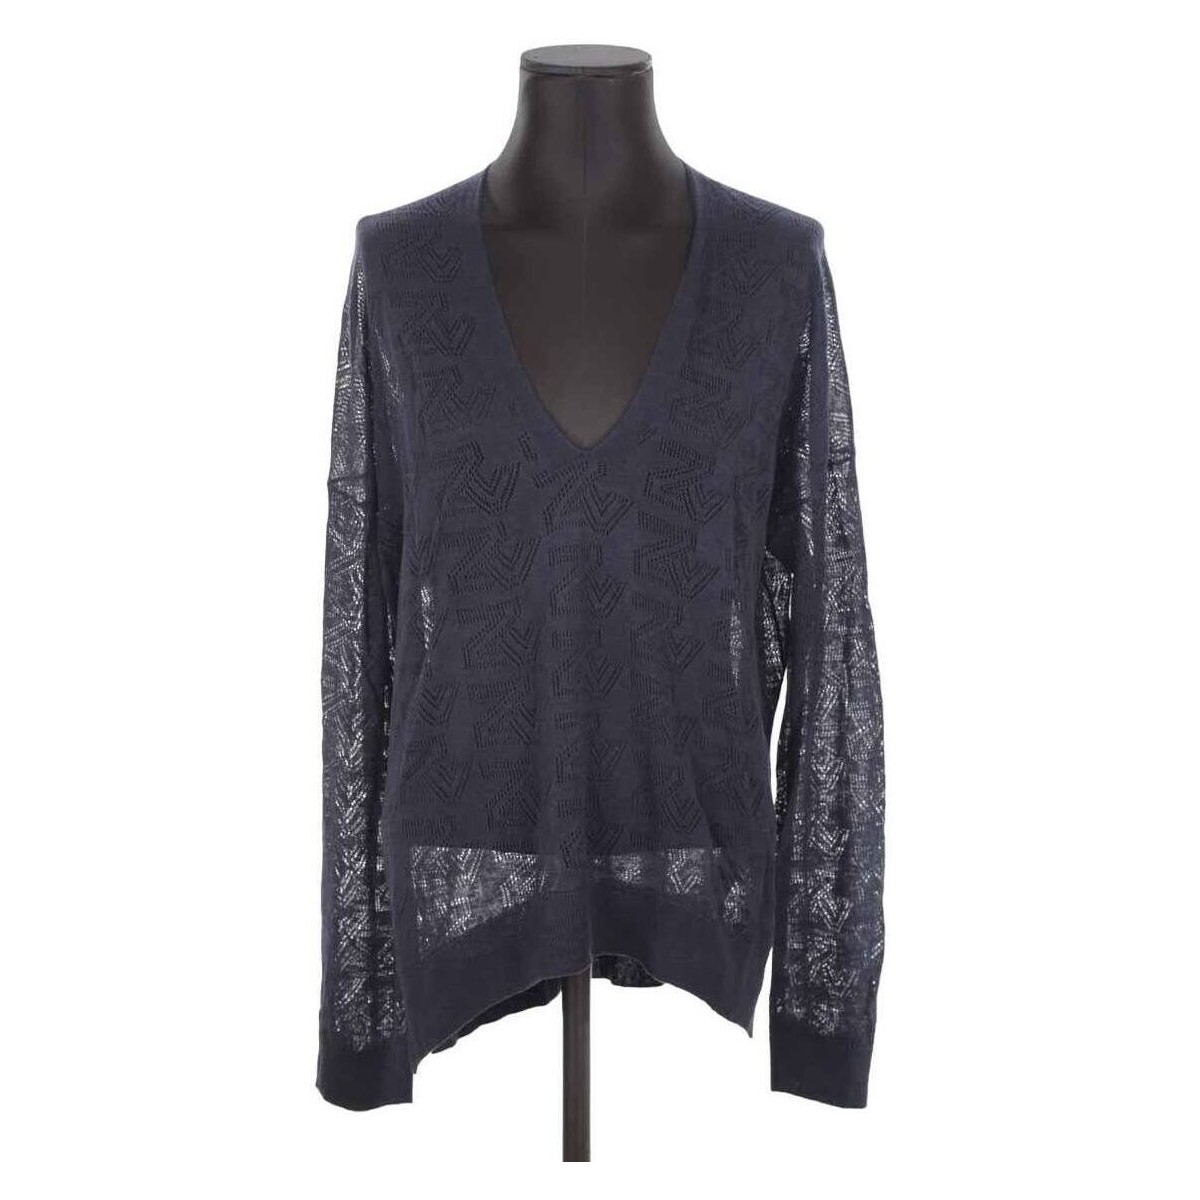 Vêtements Femme Sweats Zadig & Voltaire Pull-over en laine Bleu